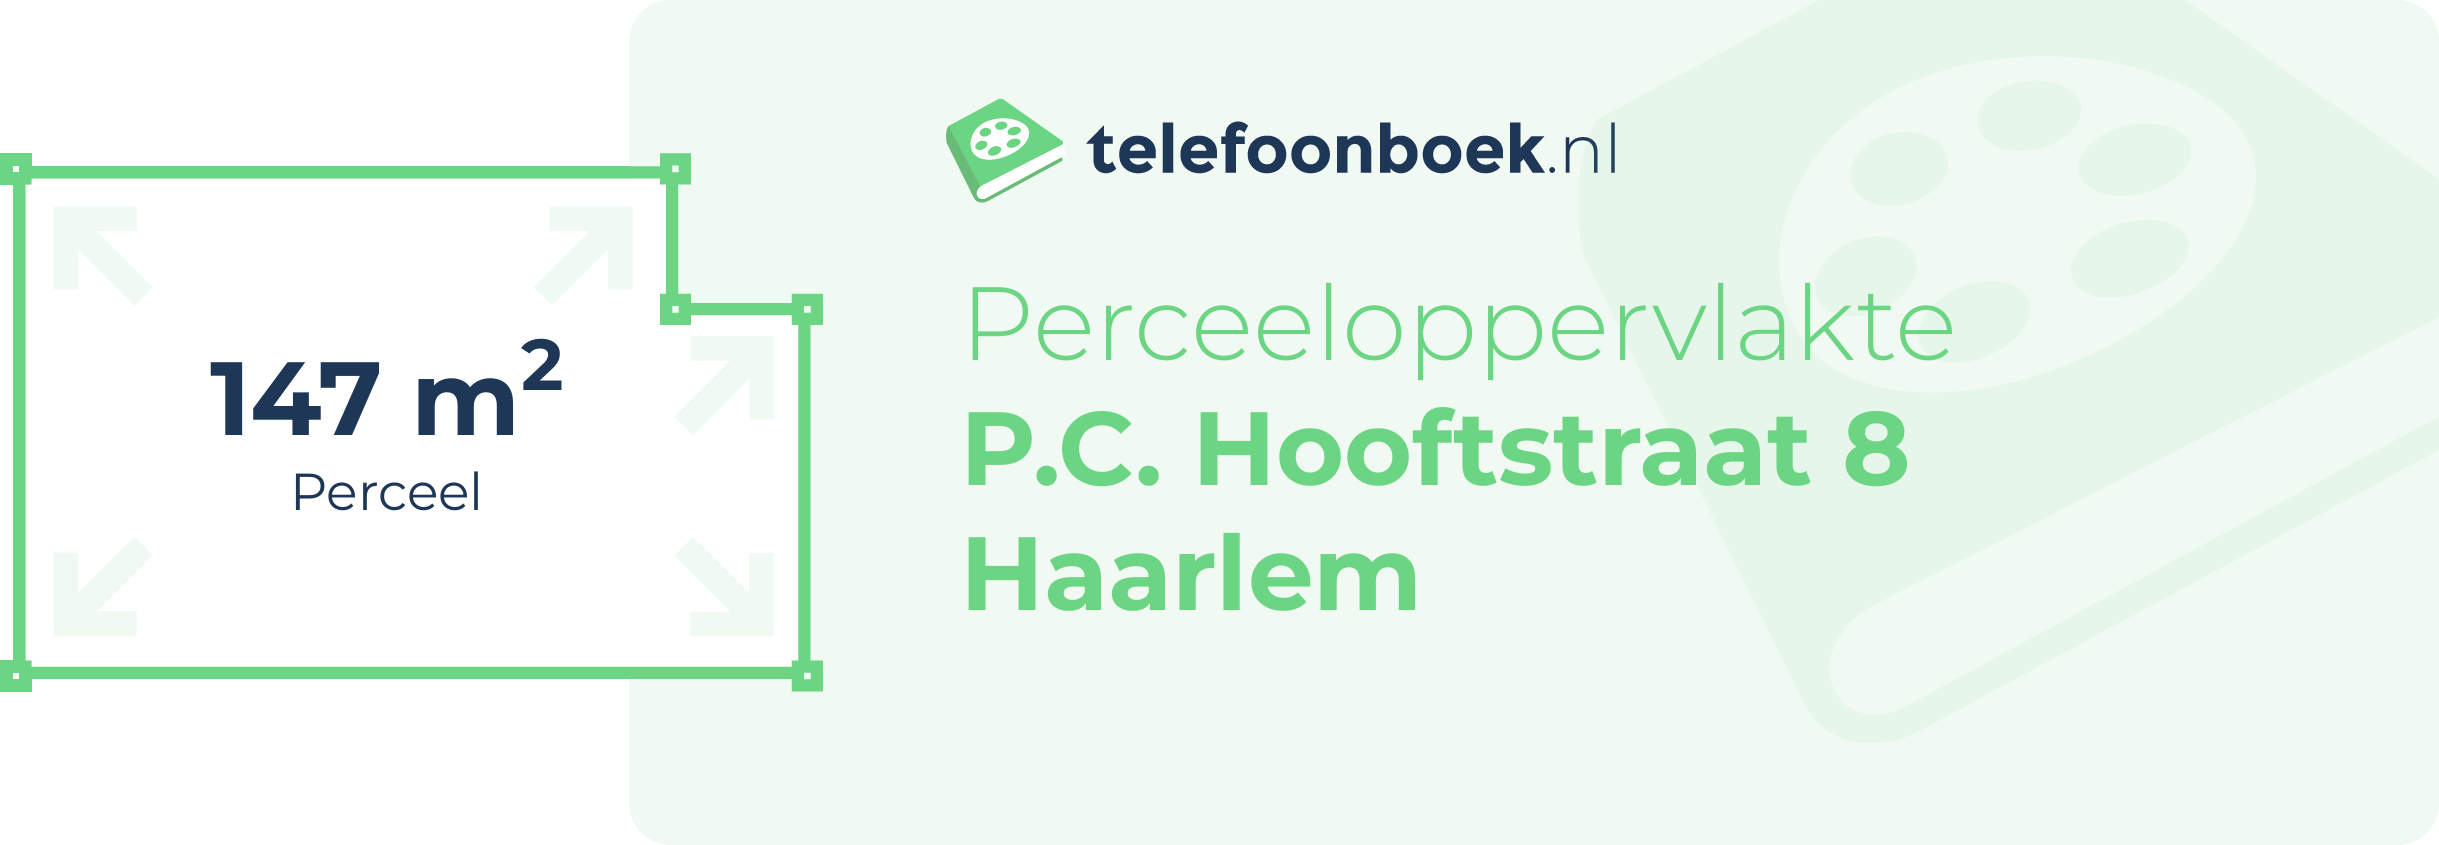 Perceeloppervlakte P.C. Hooftstraat 8 Haarlem